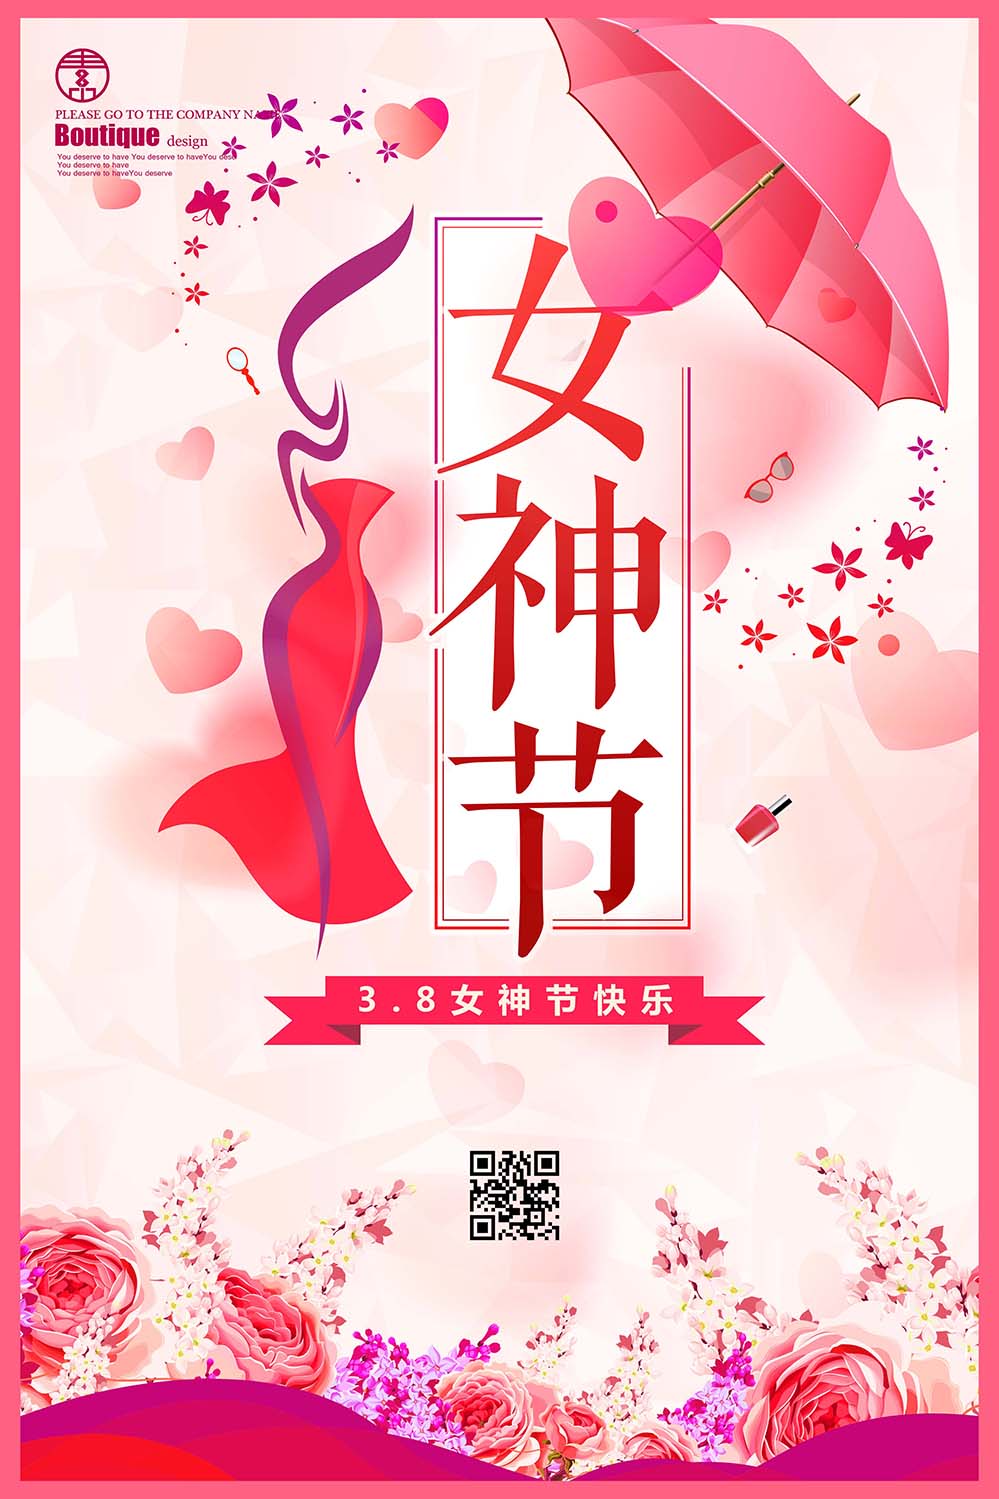 38三八女神节打红伞的魅力女子海报设计PSD源文件